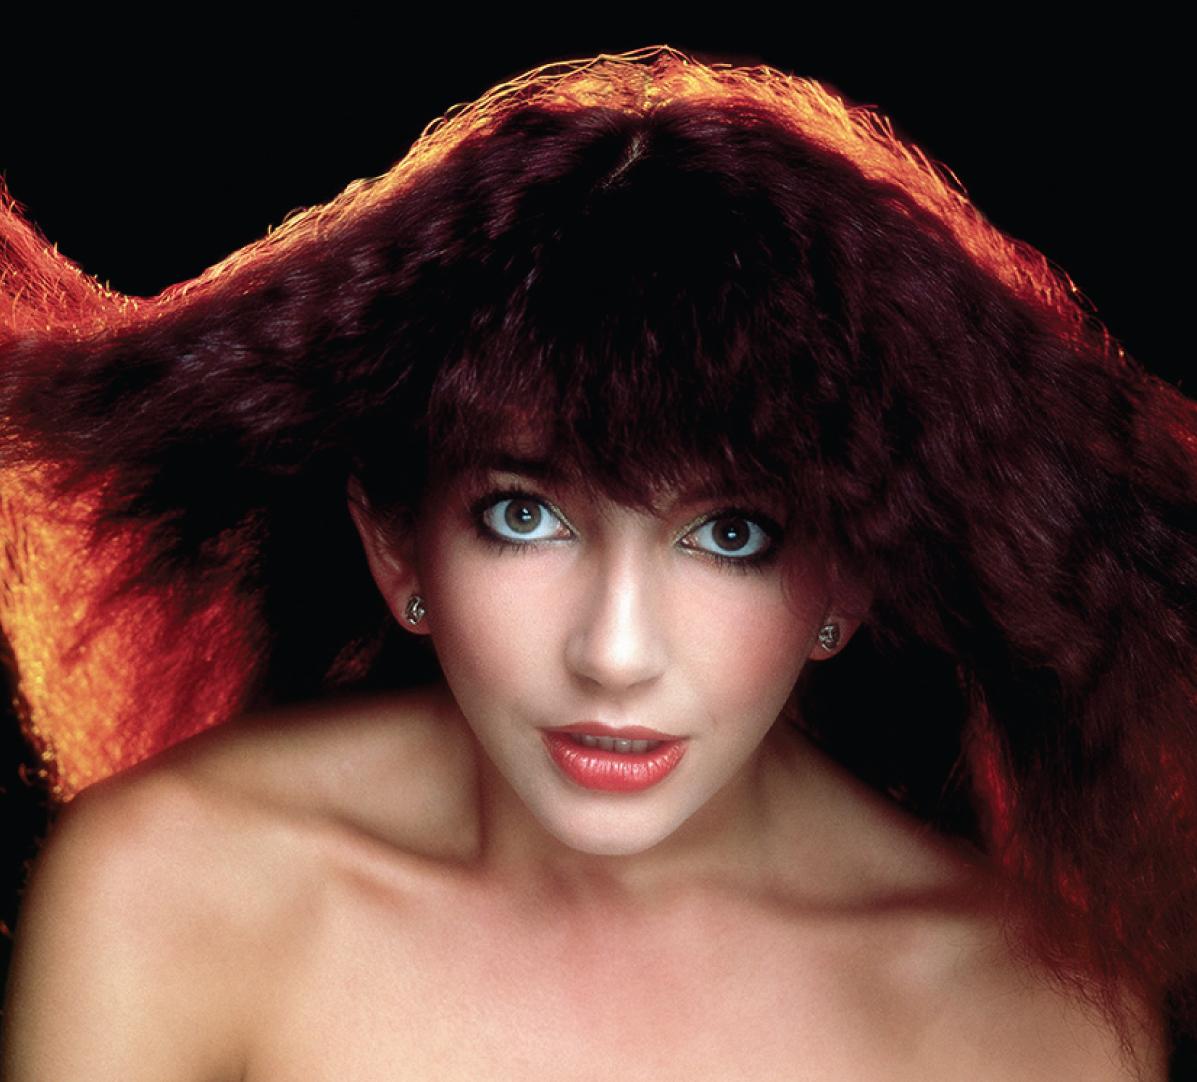 Color Photograph Gered Mankowitz - couverture de l'album Lionheart de Kate Bush